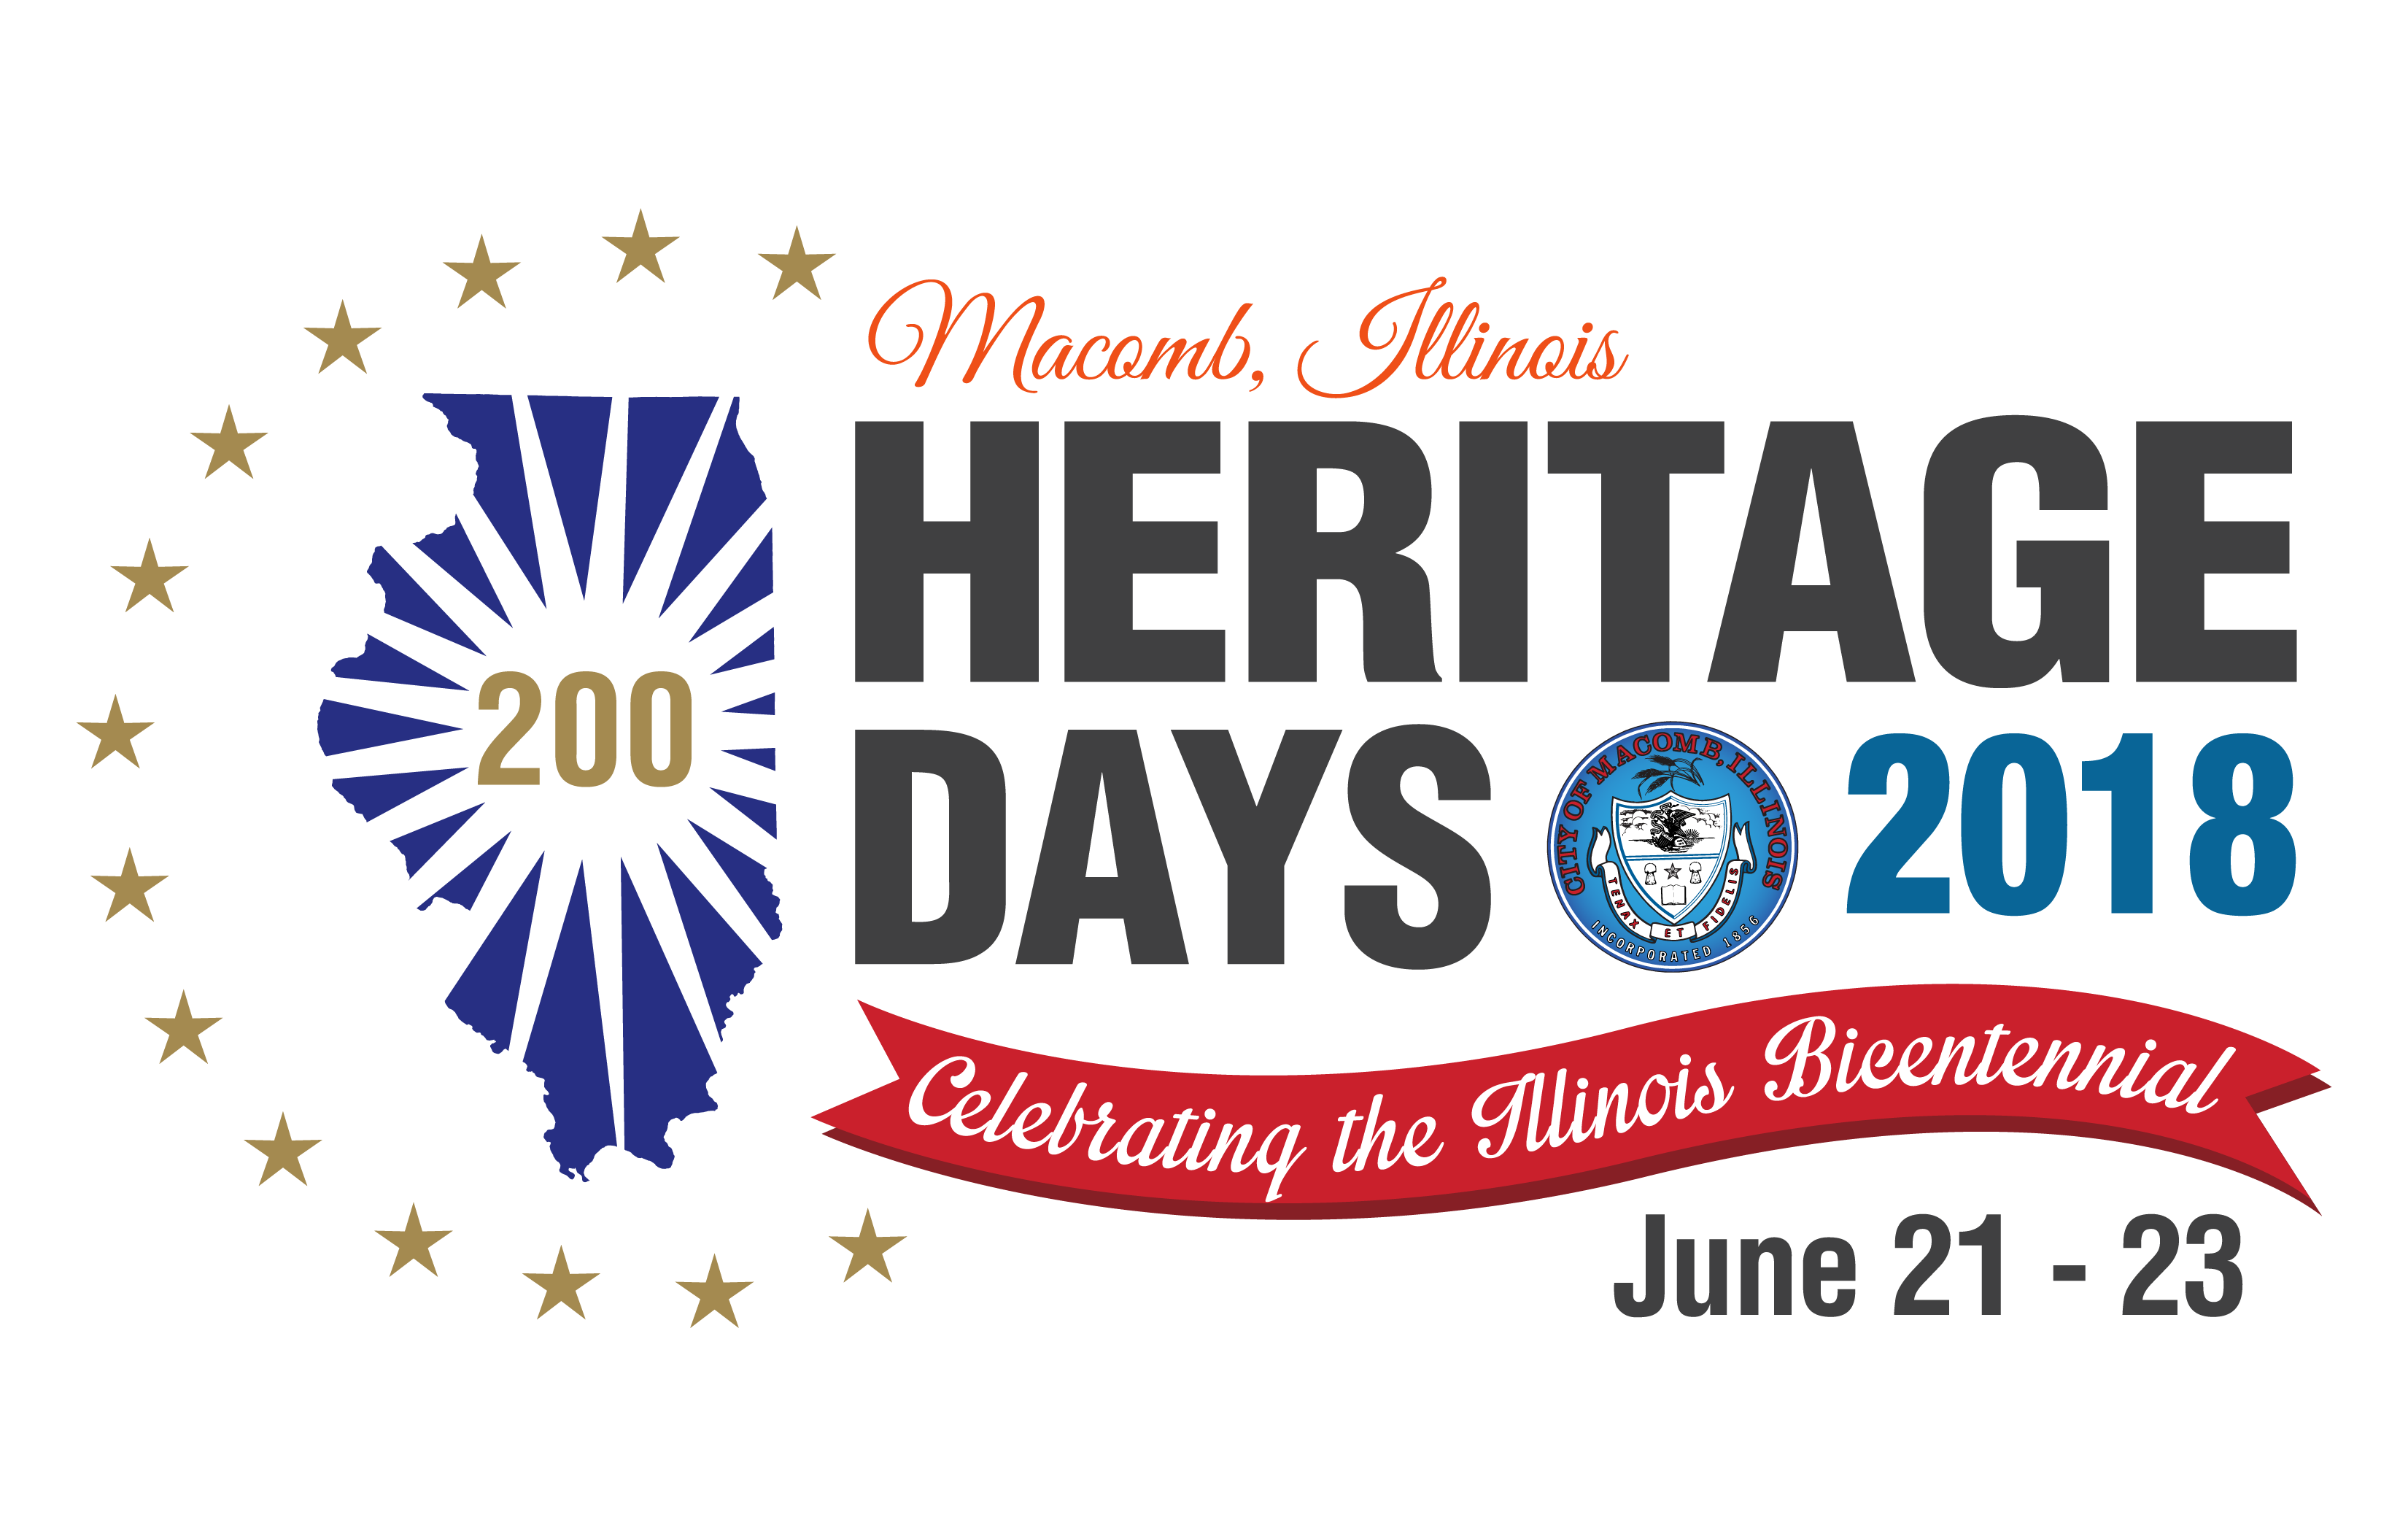 Heritage Days Illinois